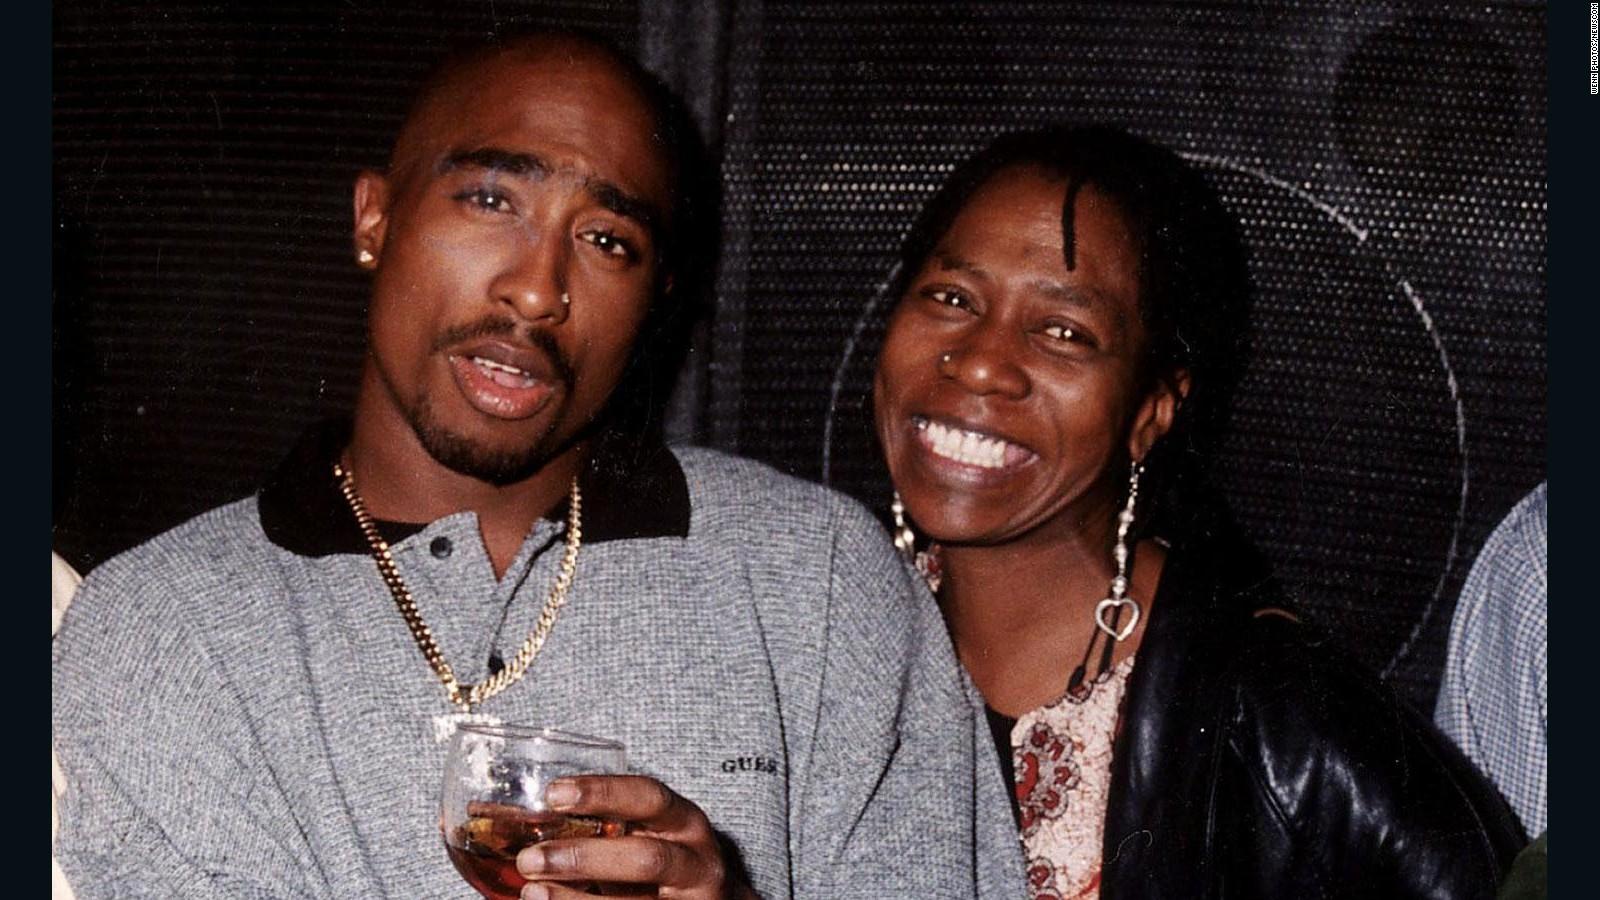 Afeni Shakur Davis, Tupac's mother, dies at 69